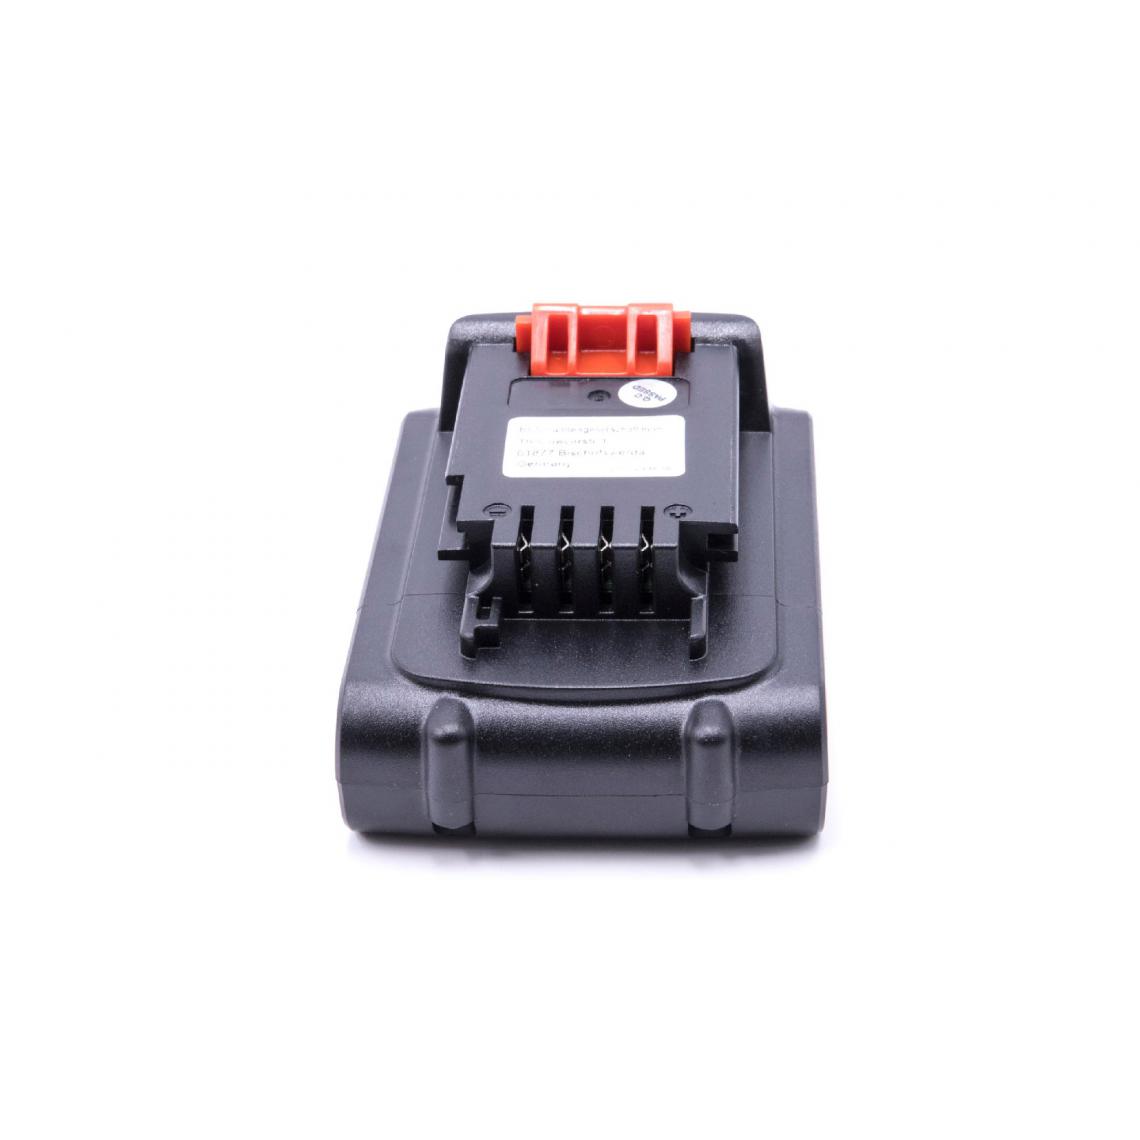 Vhbw - vhbw Batterie compatible avec Black & Decker GTC1850LB, GTC610L, GTC650L, GTC800L, GWC1800L outil électrique (1500mAh Li-ion 18 V) - Clouterie